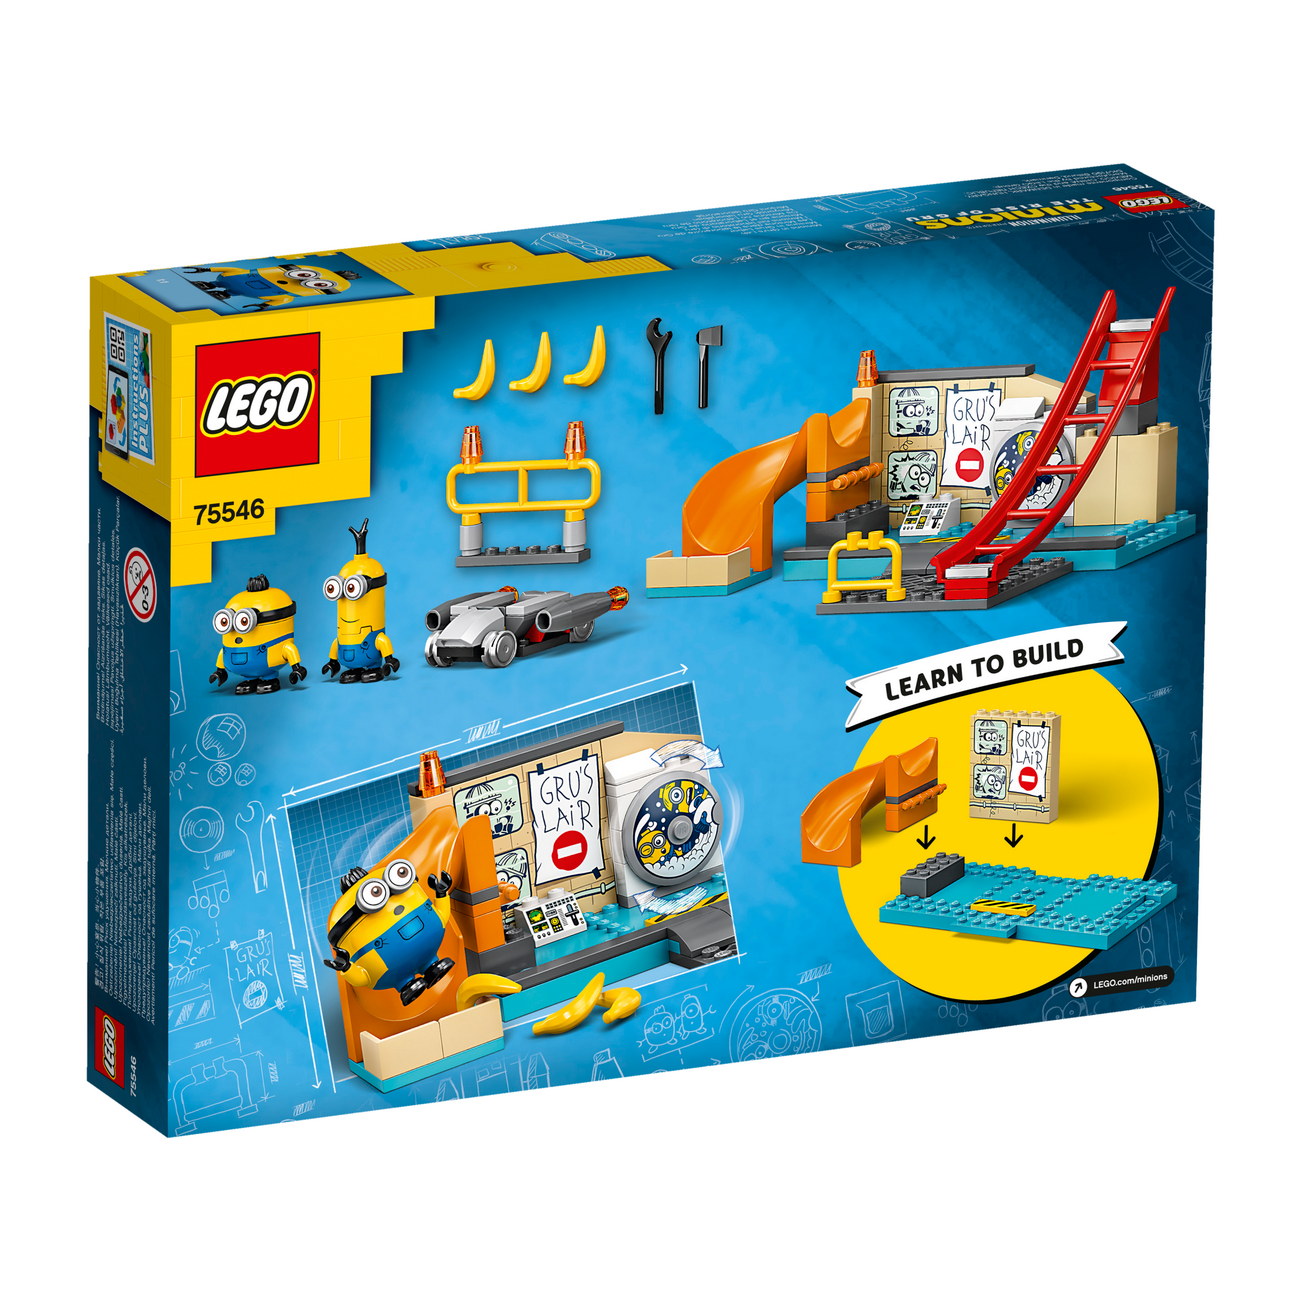 LEGO Minions 75546 - Minions in Grus Labor